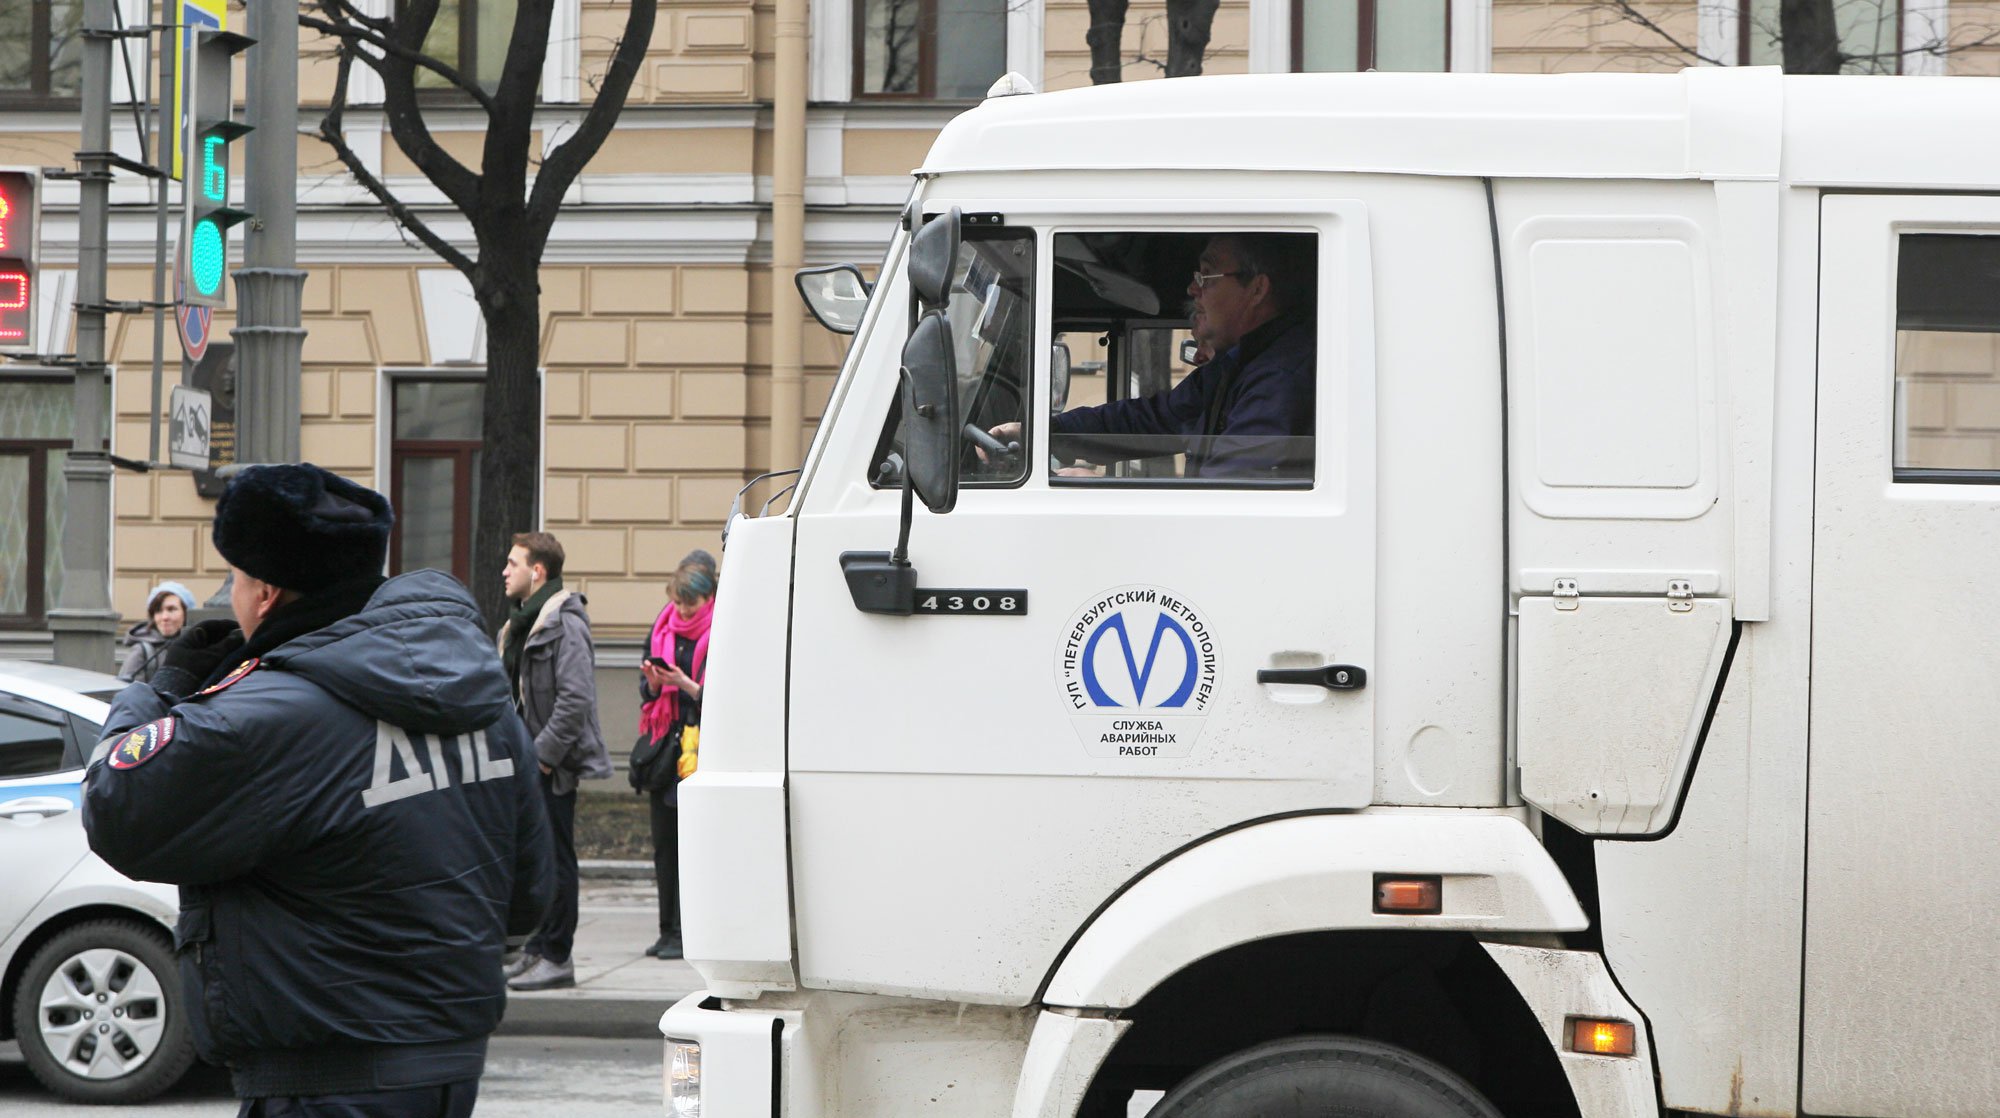 Dailystorm - ФСБ задержала семерых подозреваемых в подготовке теракта в Санкт-Петербурге